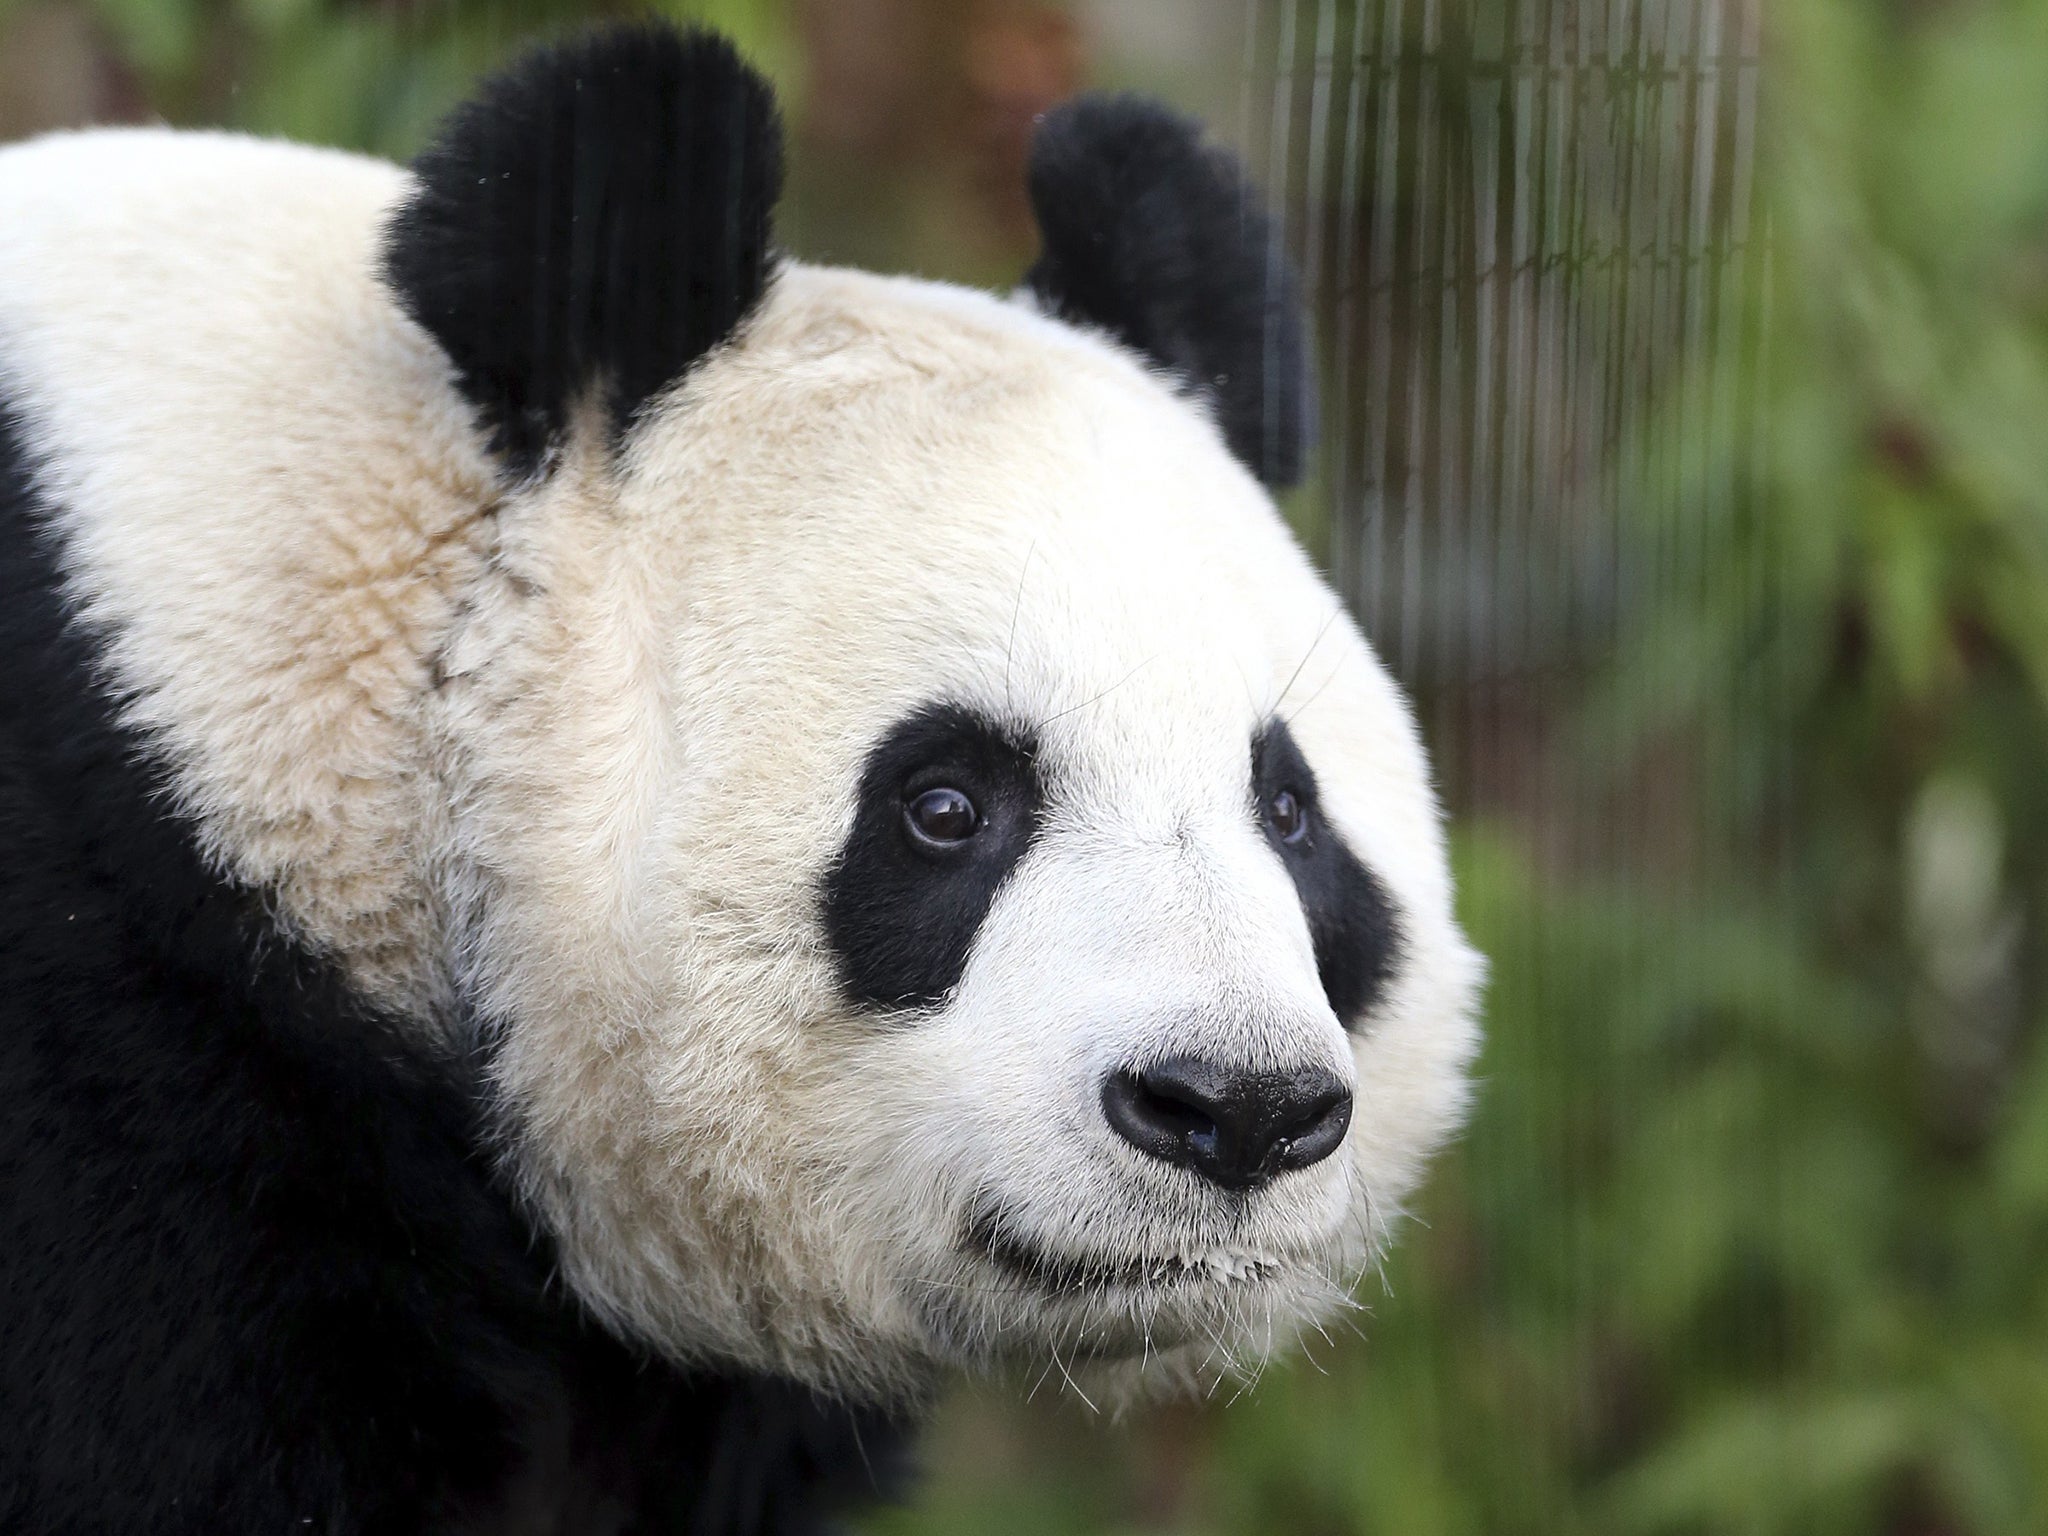 Tian Tian is seen exploring her enclosure at Edinburgh Zoo